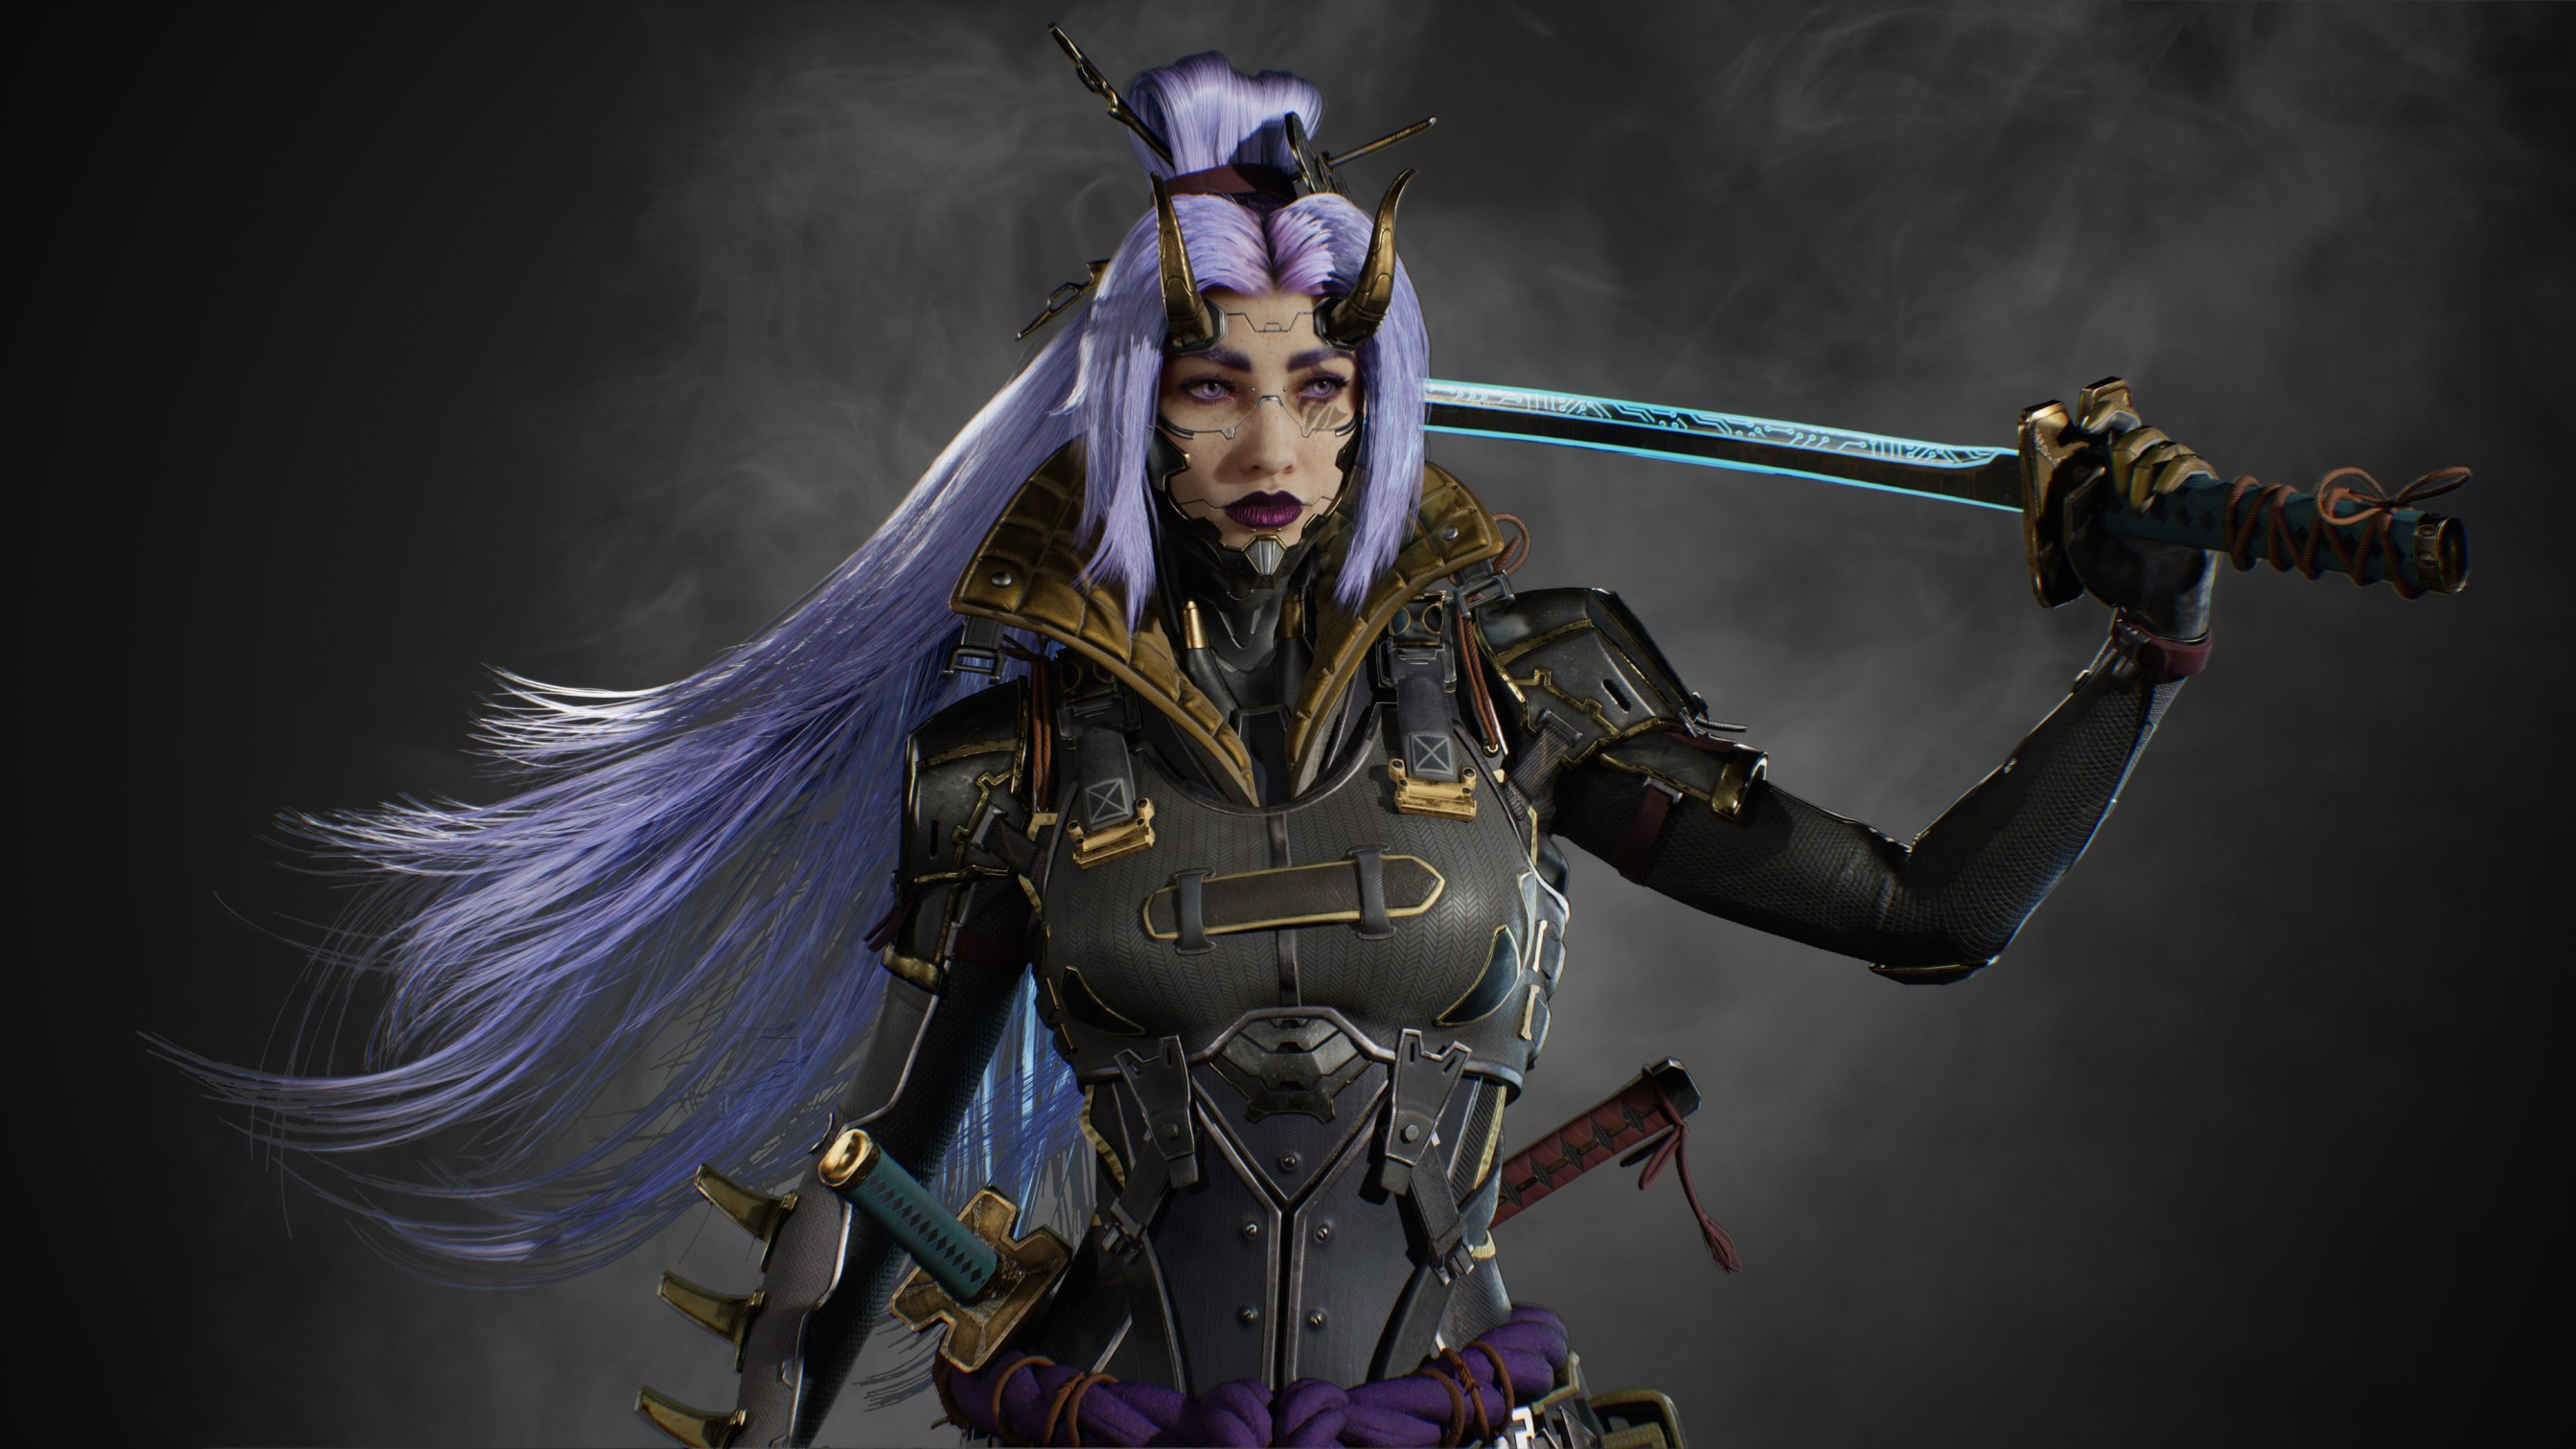 Digital Art Artwork Illustration Women Horns Sword Women With Swords Cyberpunk Samurai Katana Long H 2688x1512